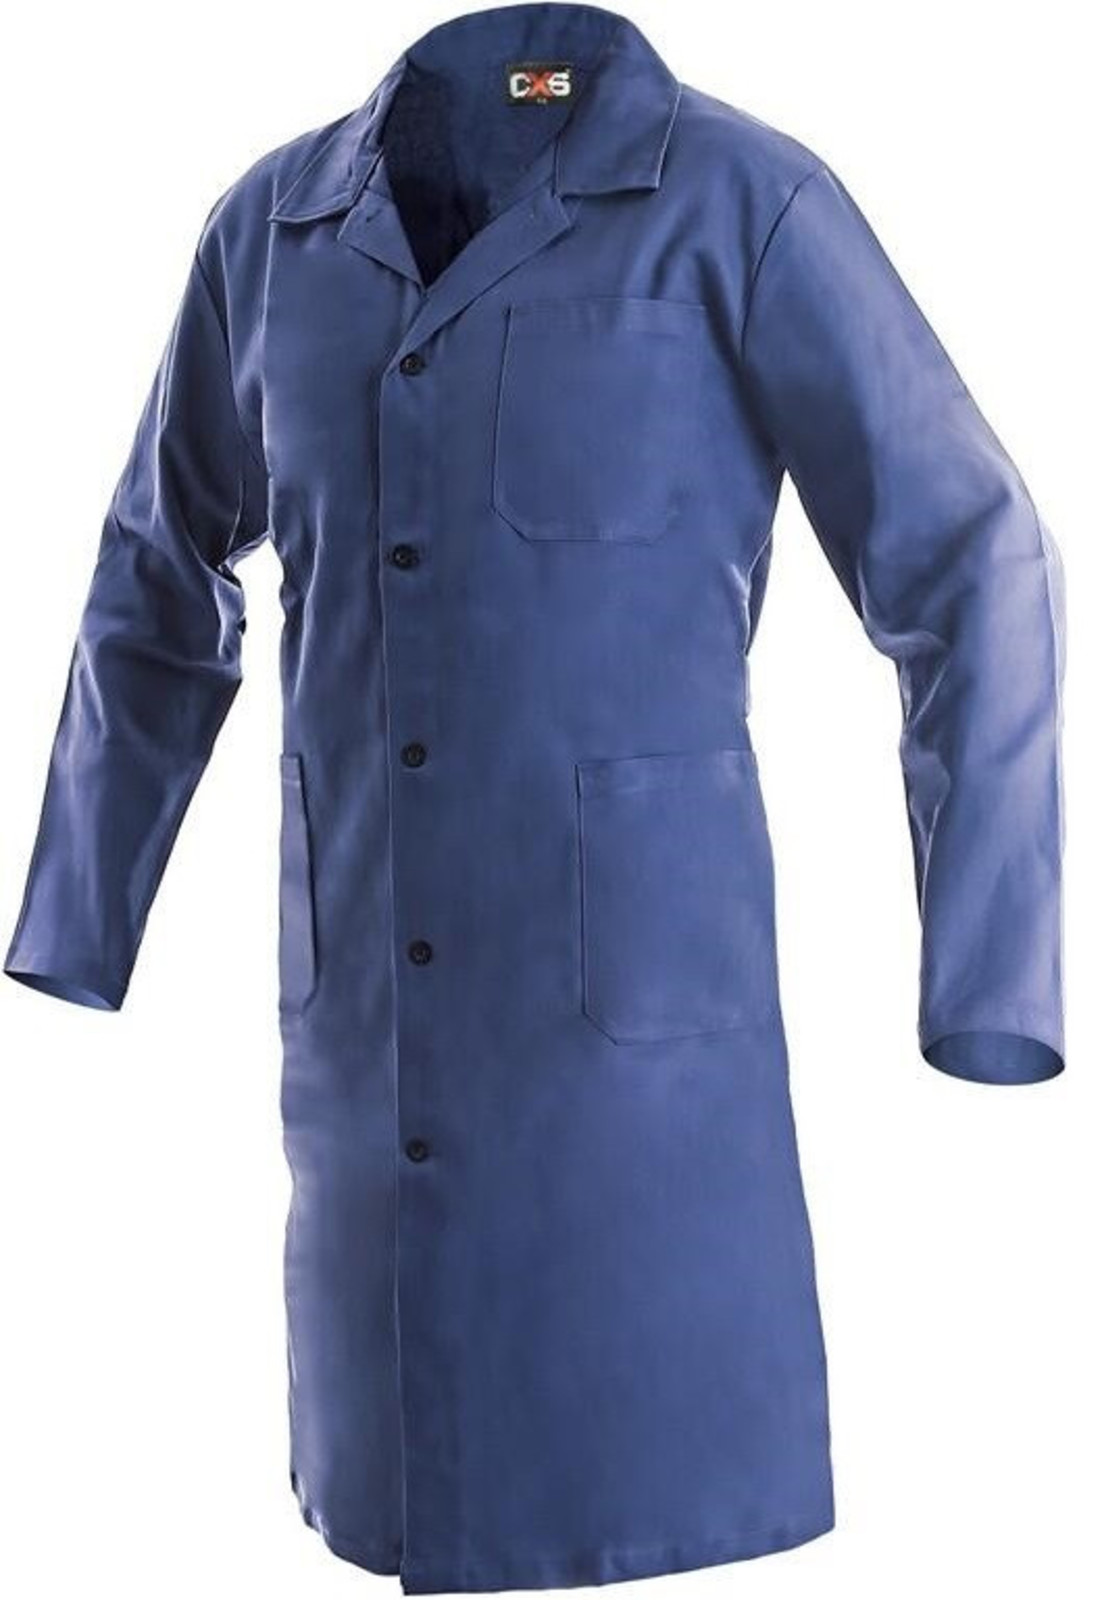 Pánsky pracovný plášť CXS Klasik Venca - veľkosť: 56, farba: modrá